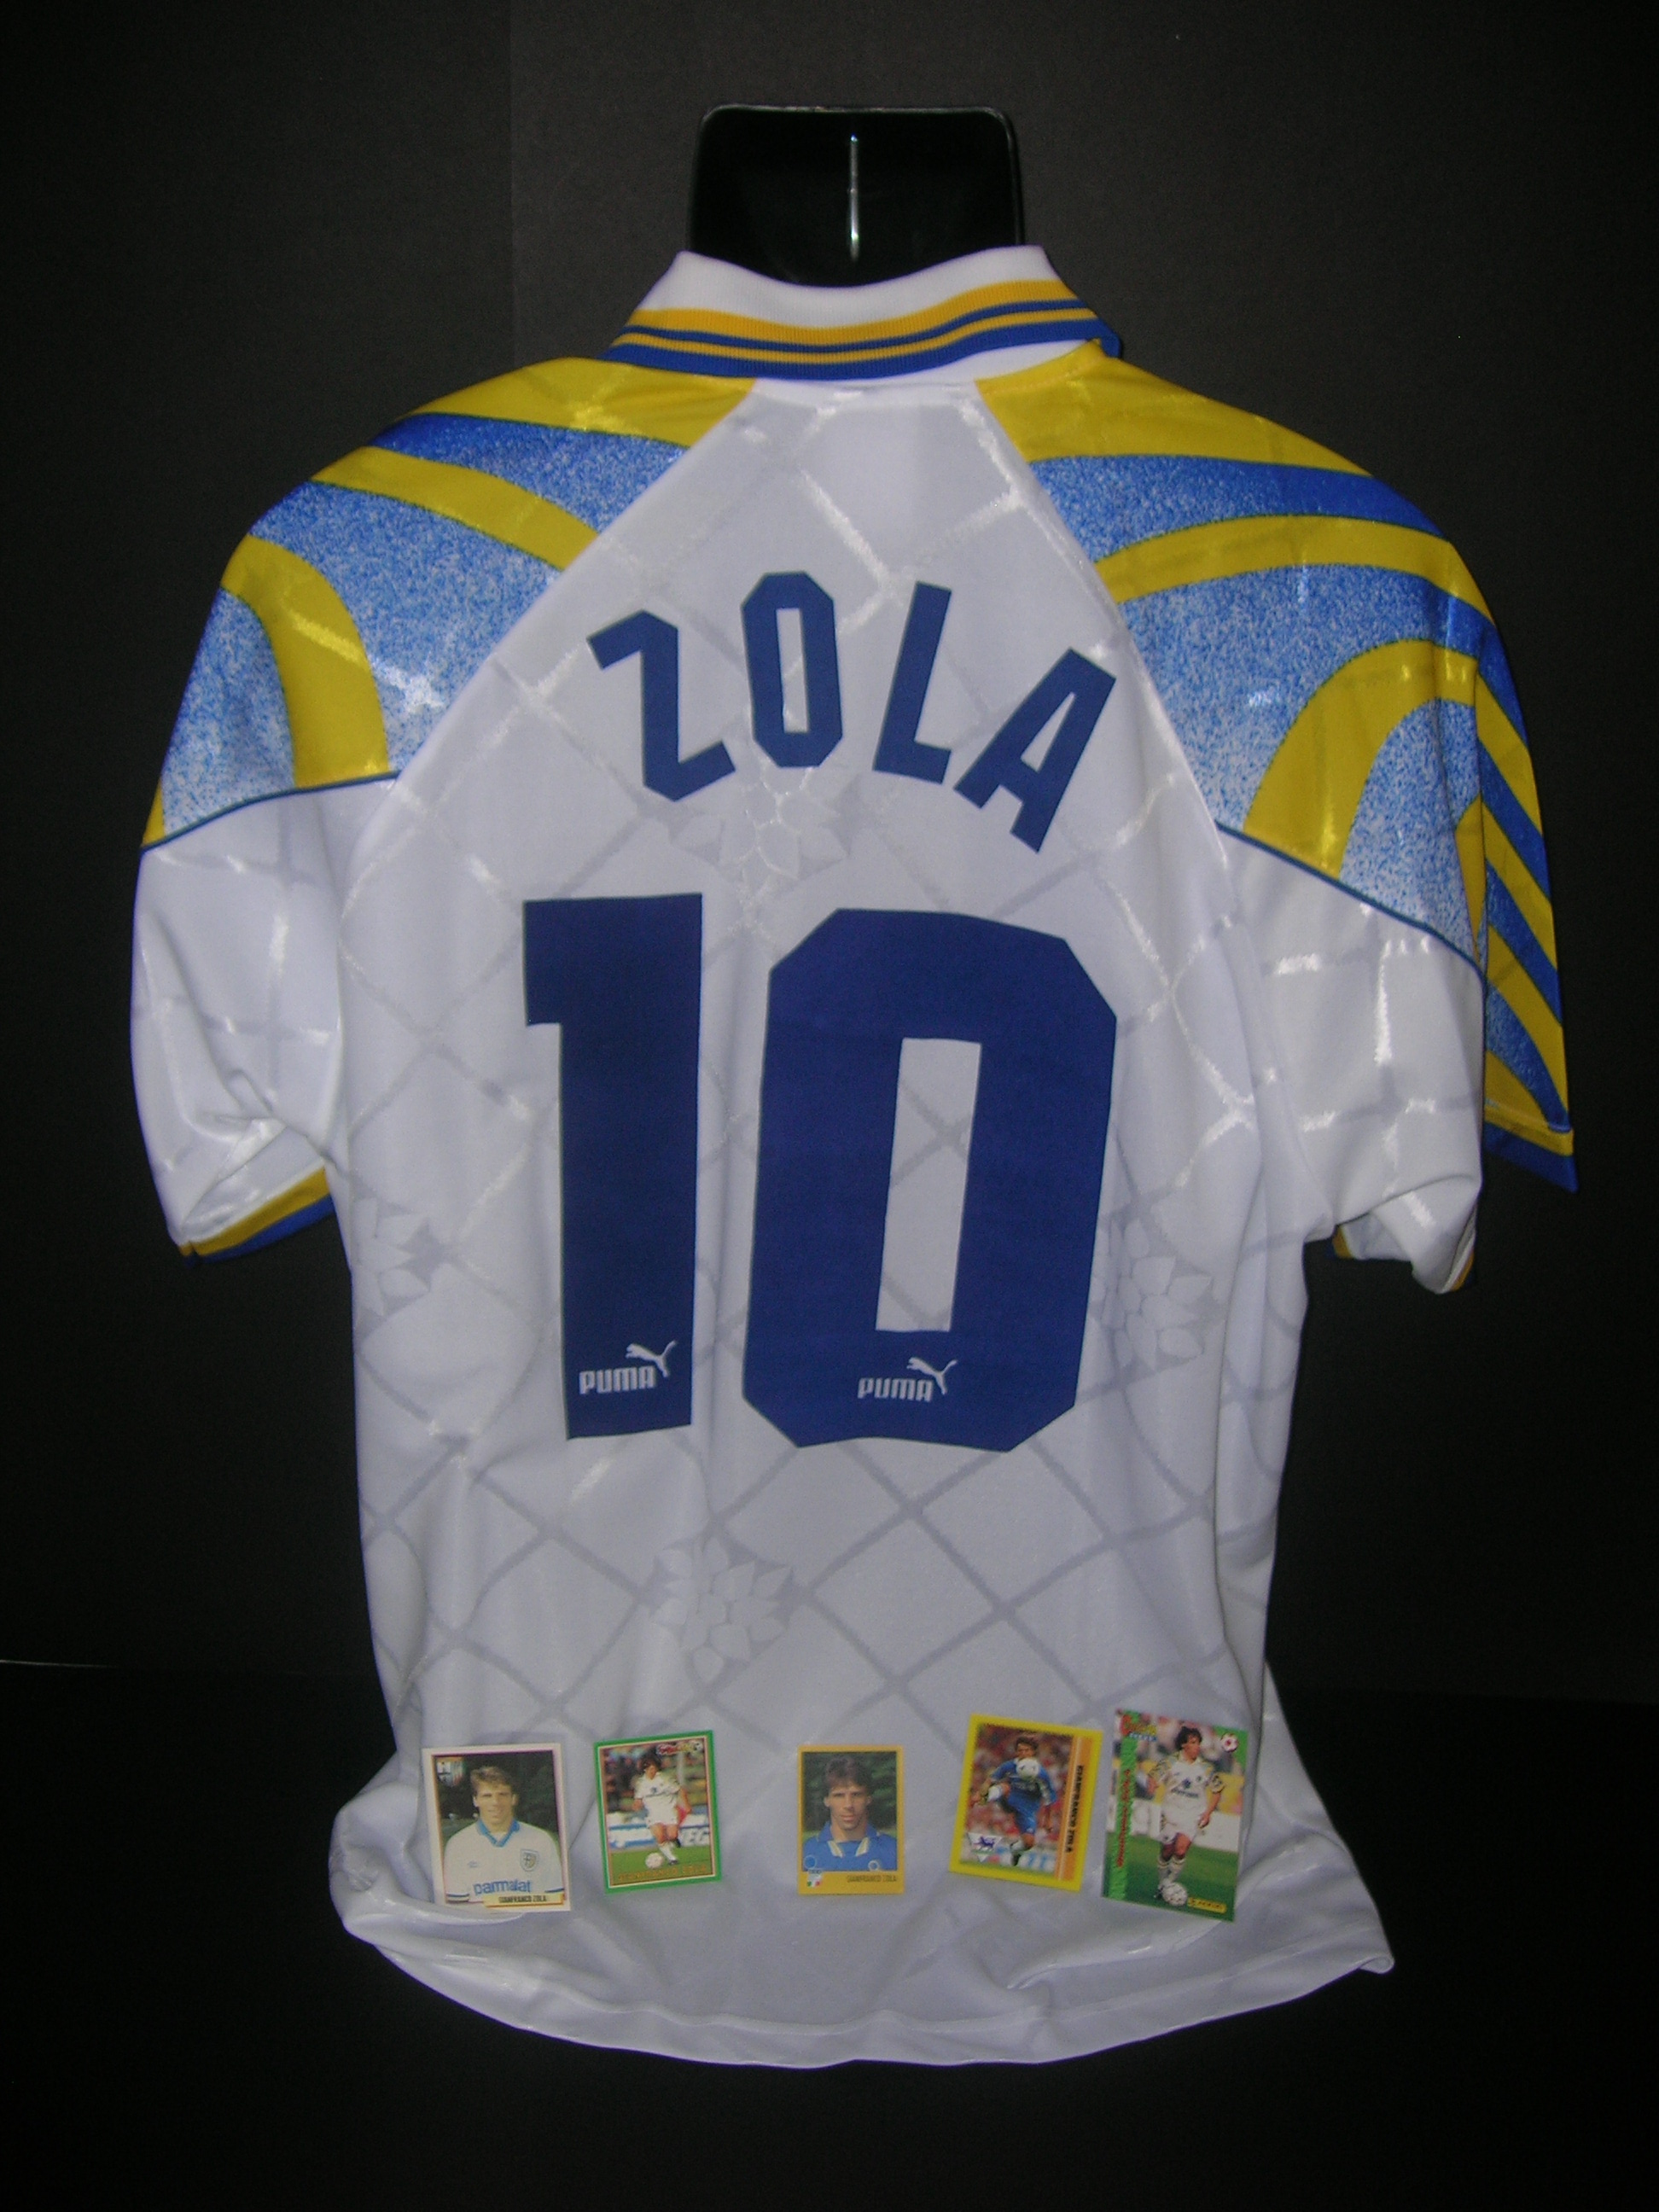 Parma  Zola  10  A-2